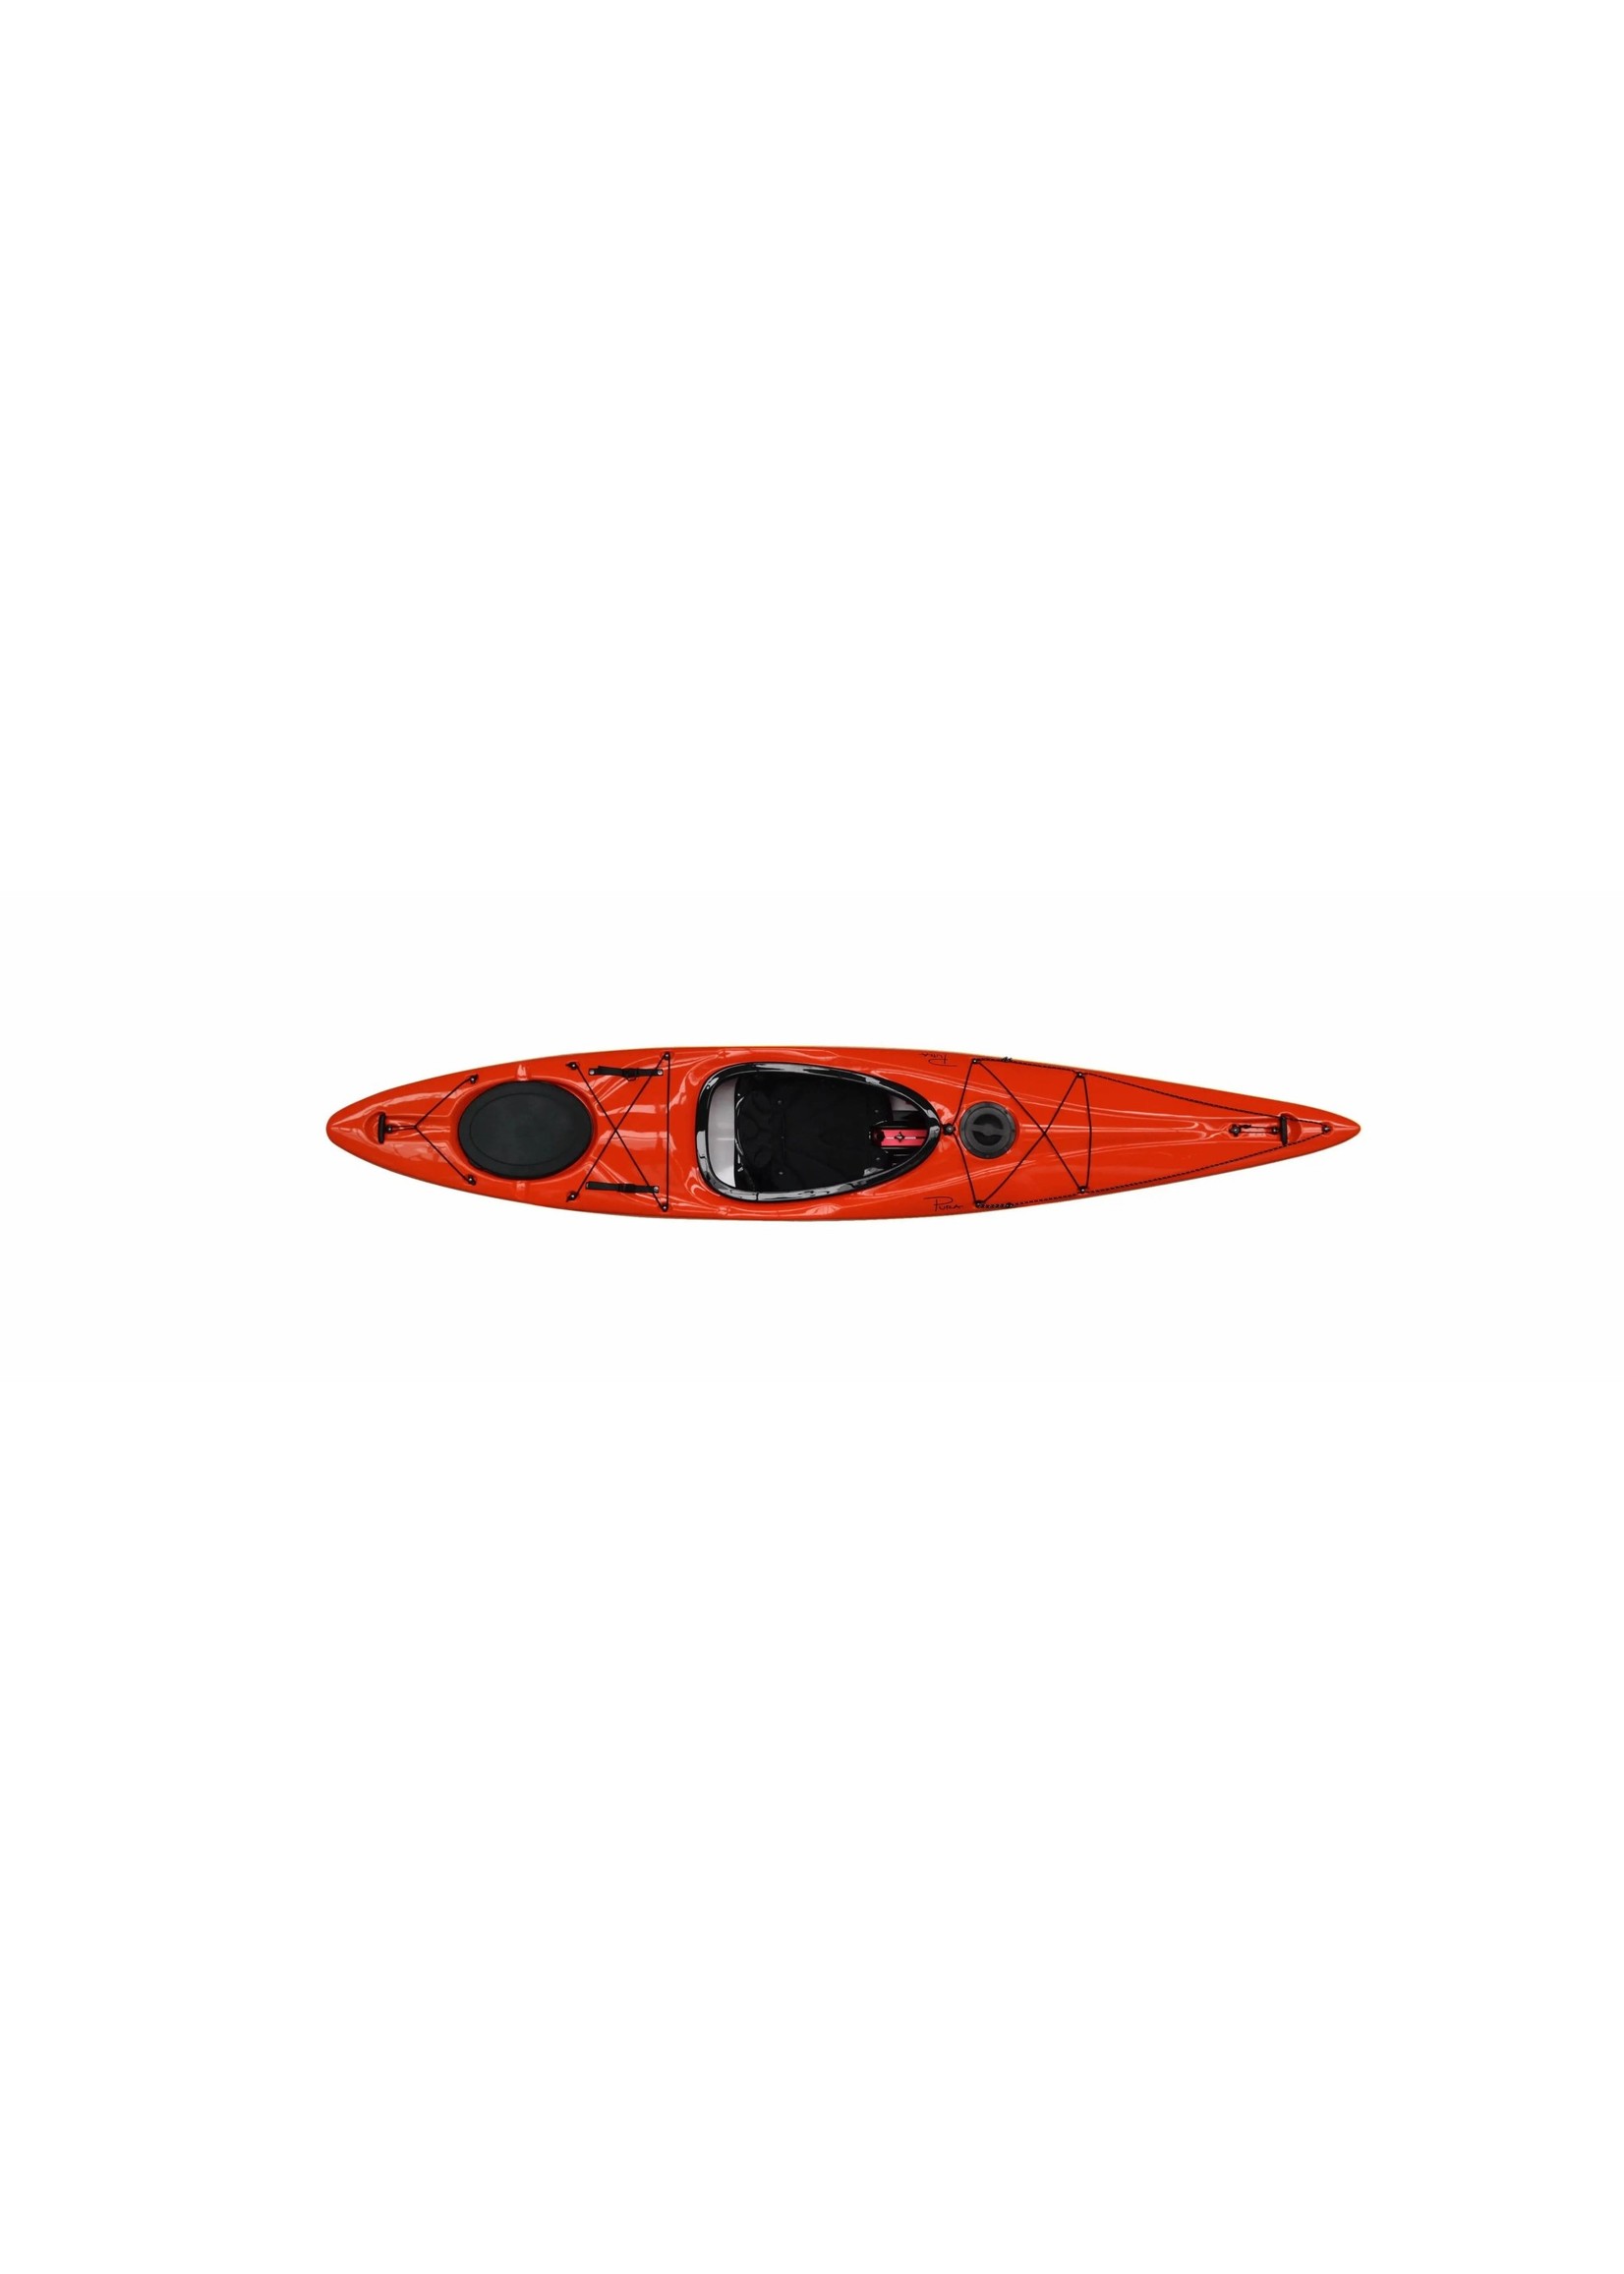 Boréal Design Kayak récréatif Pura 120 Ultralight | en rabais de 20%! * sur les stocks en magasin seulement.